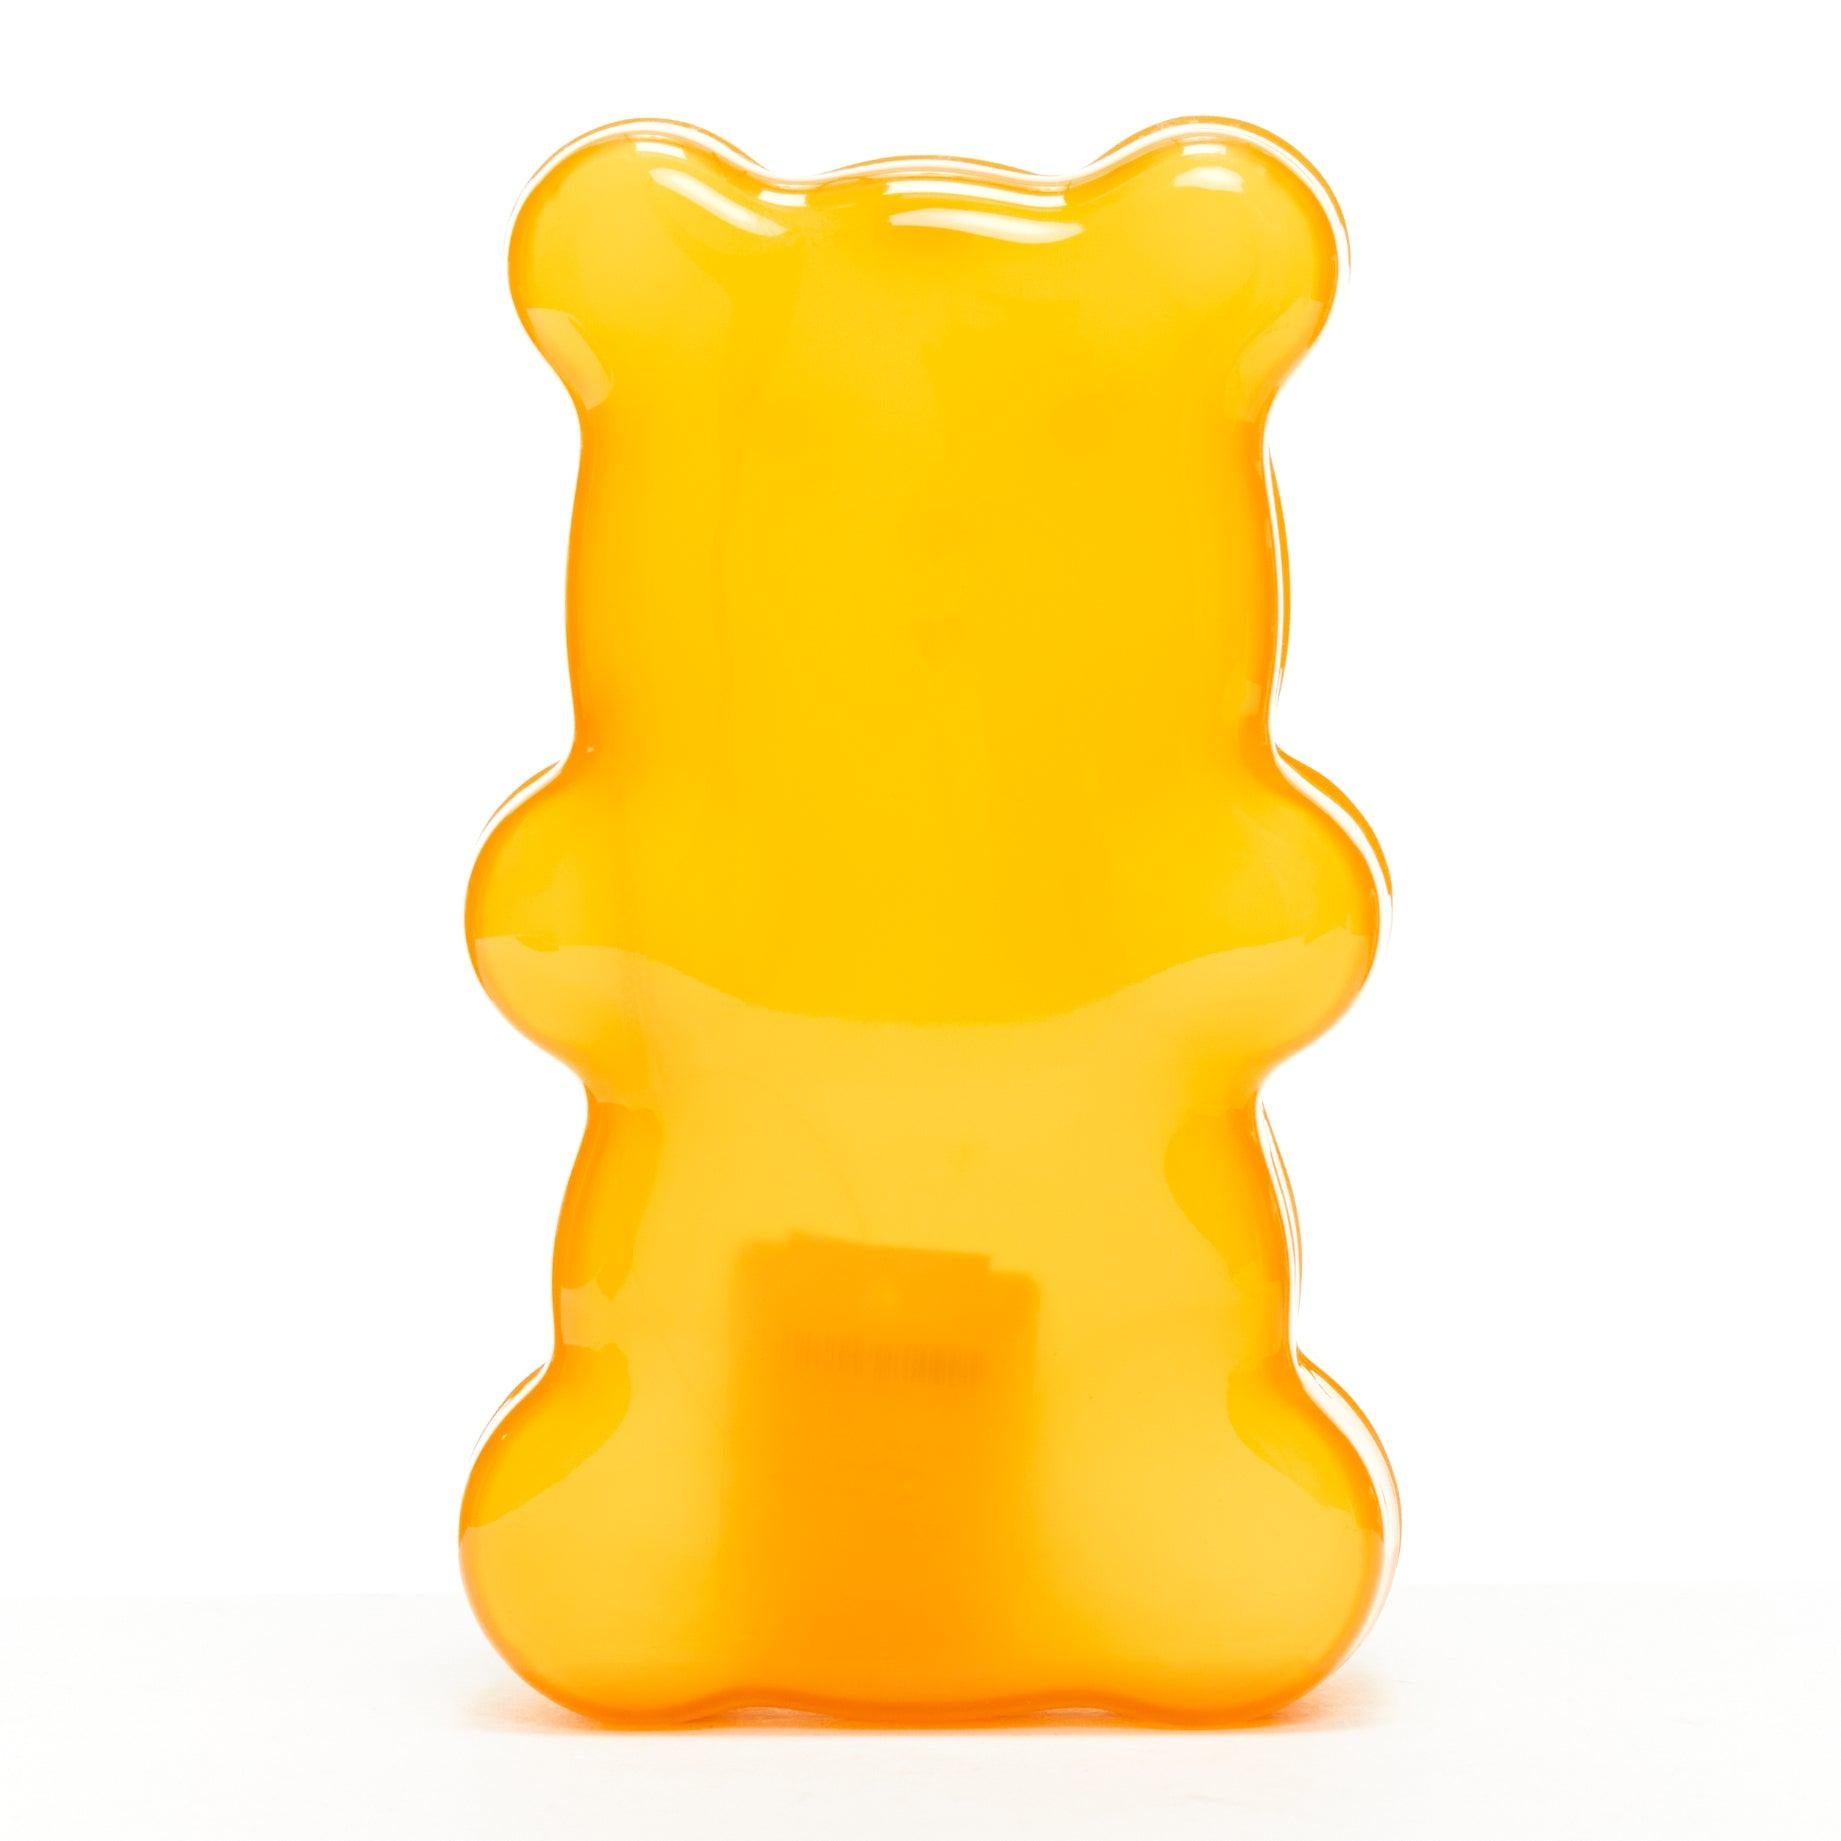 CHARLOTTE OLYMPIA egg yolk yellow gummy bear acrylic box clutch bag For Sale 1